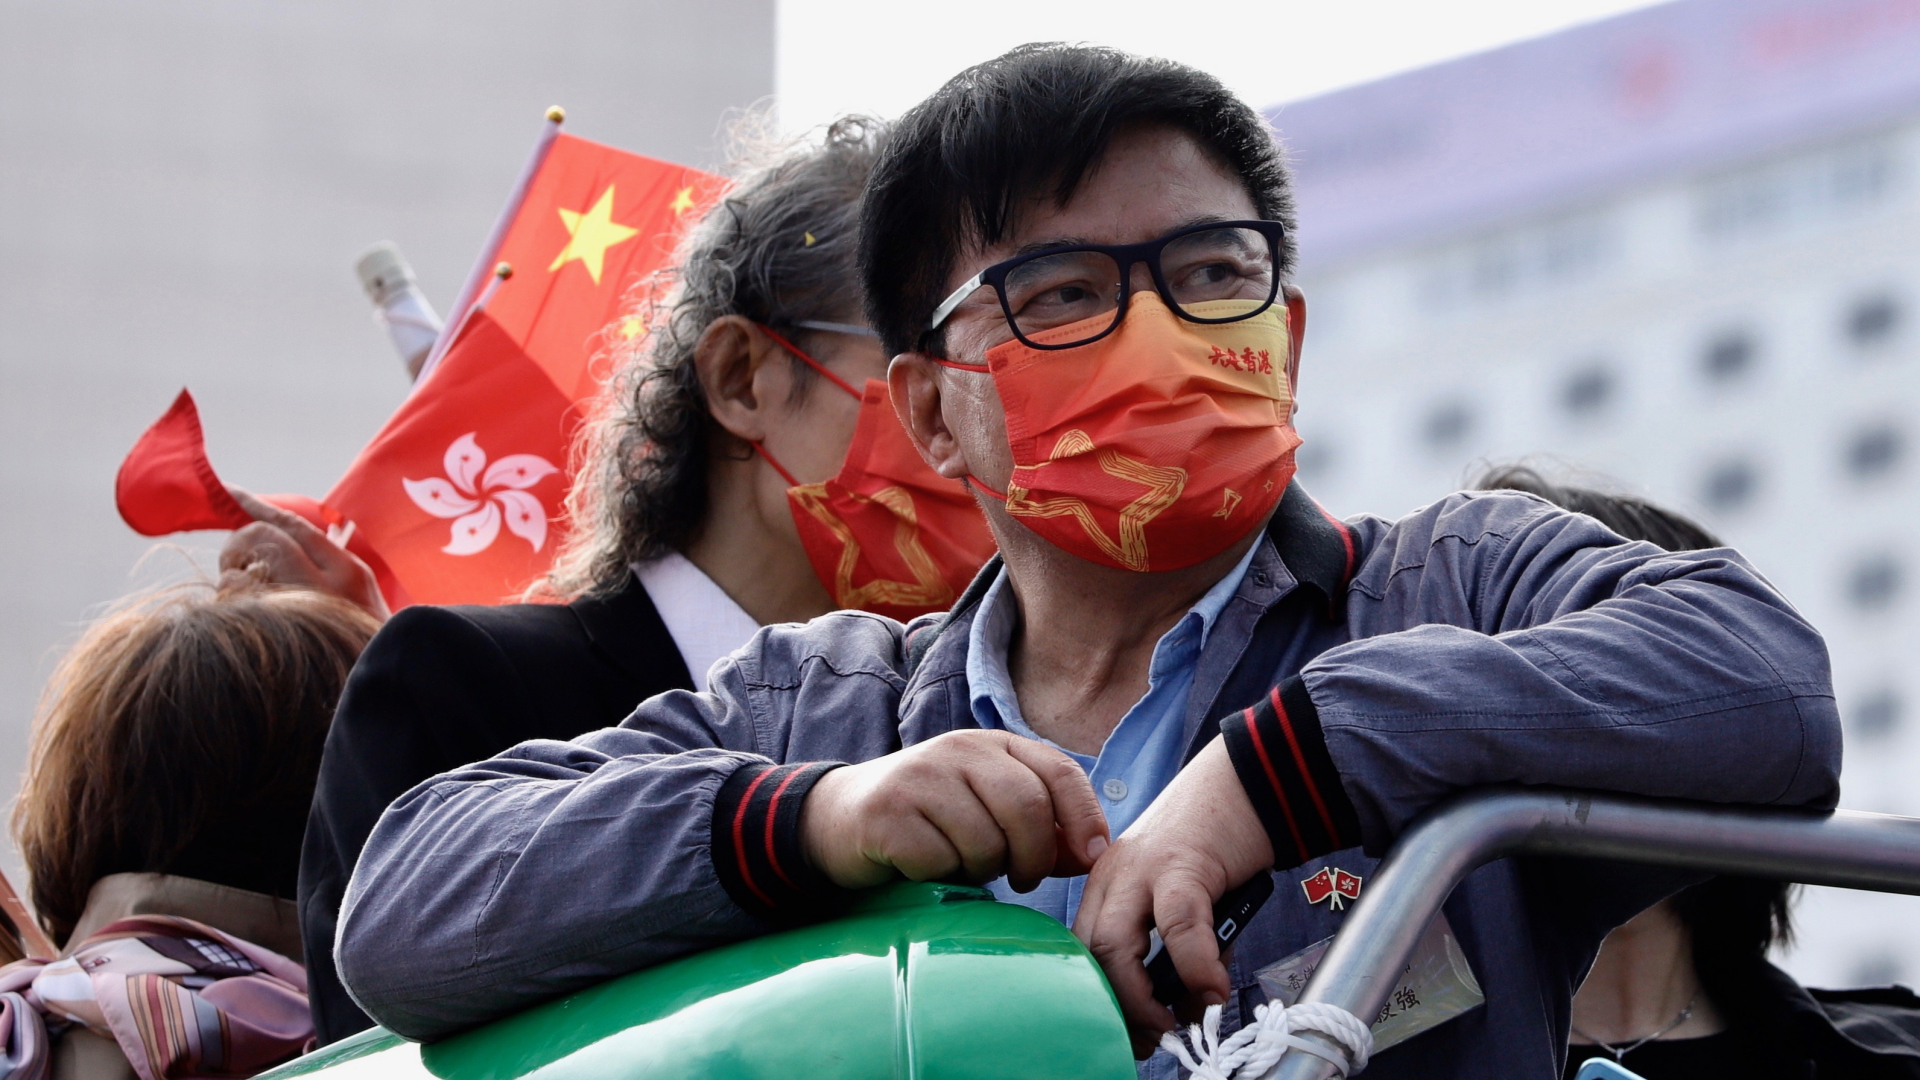 "Gemeinsam Hongkong aufbauen" steht auf der Maske eines Mannes, der einen peking-nahen Kurs unterstützt. | dpa